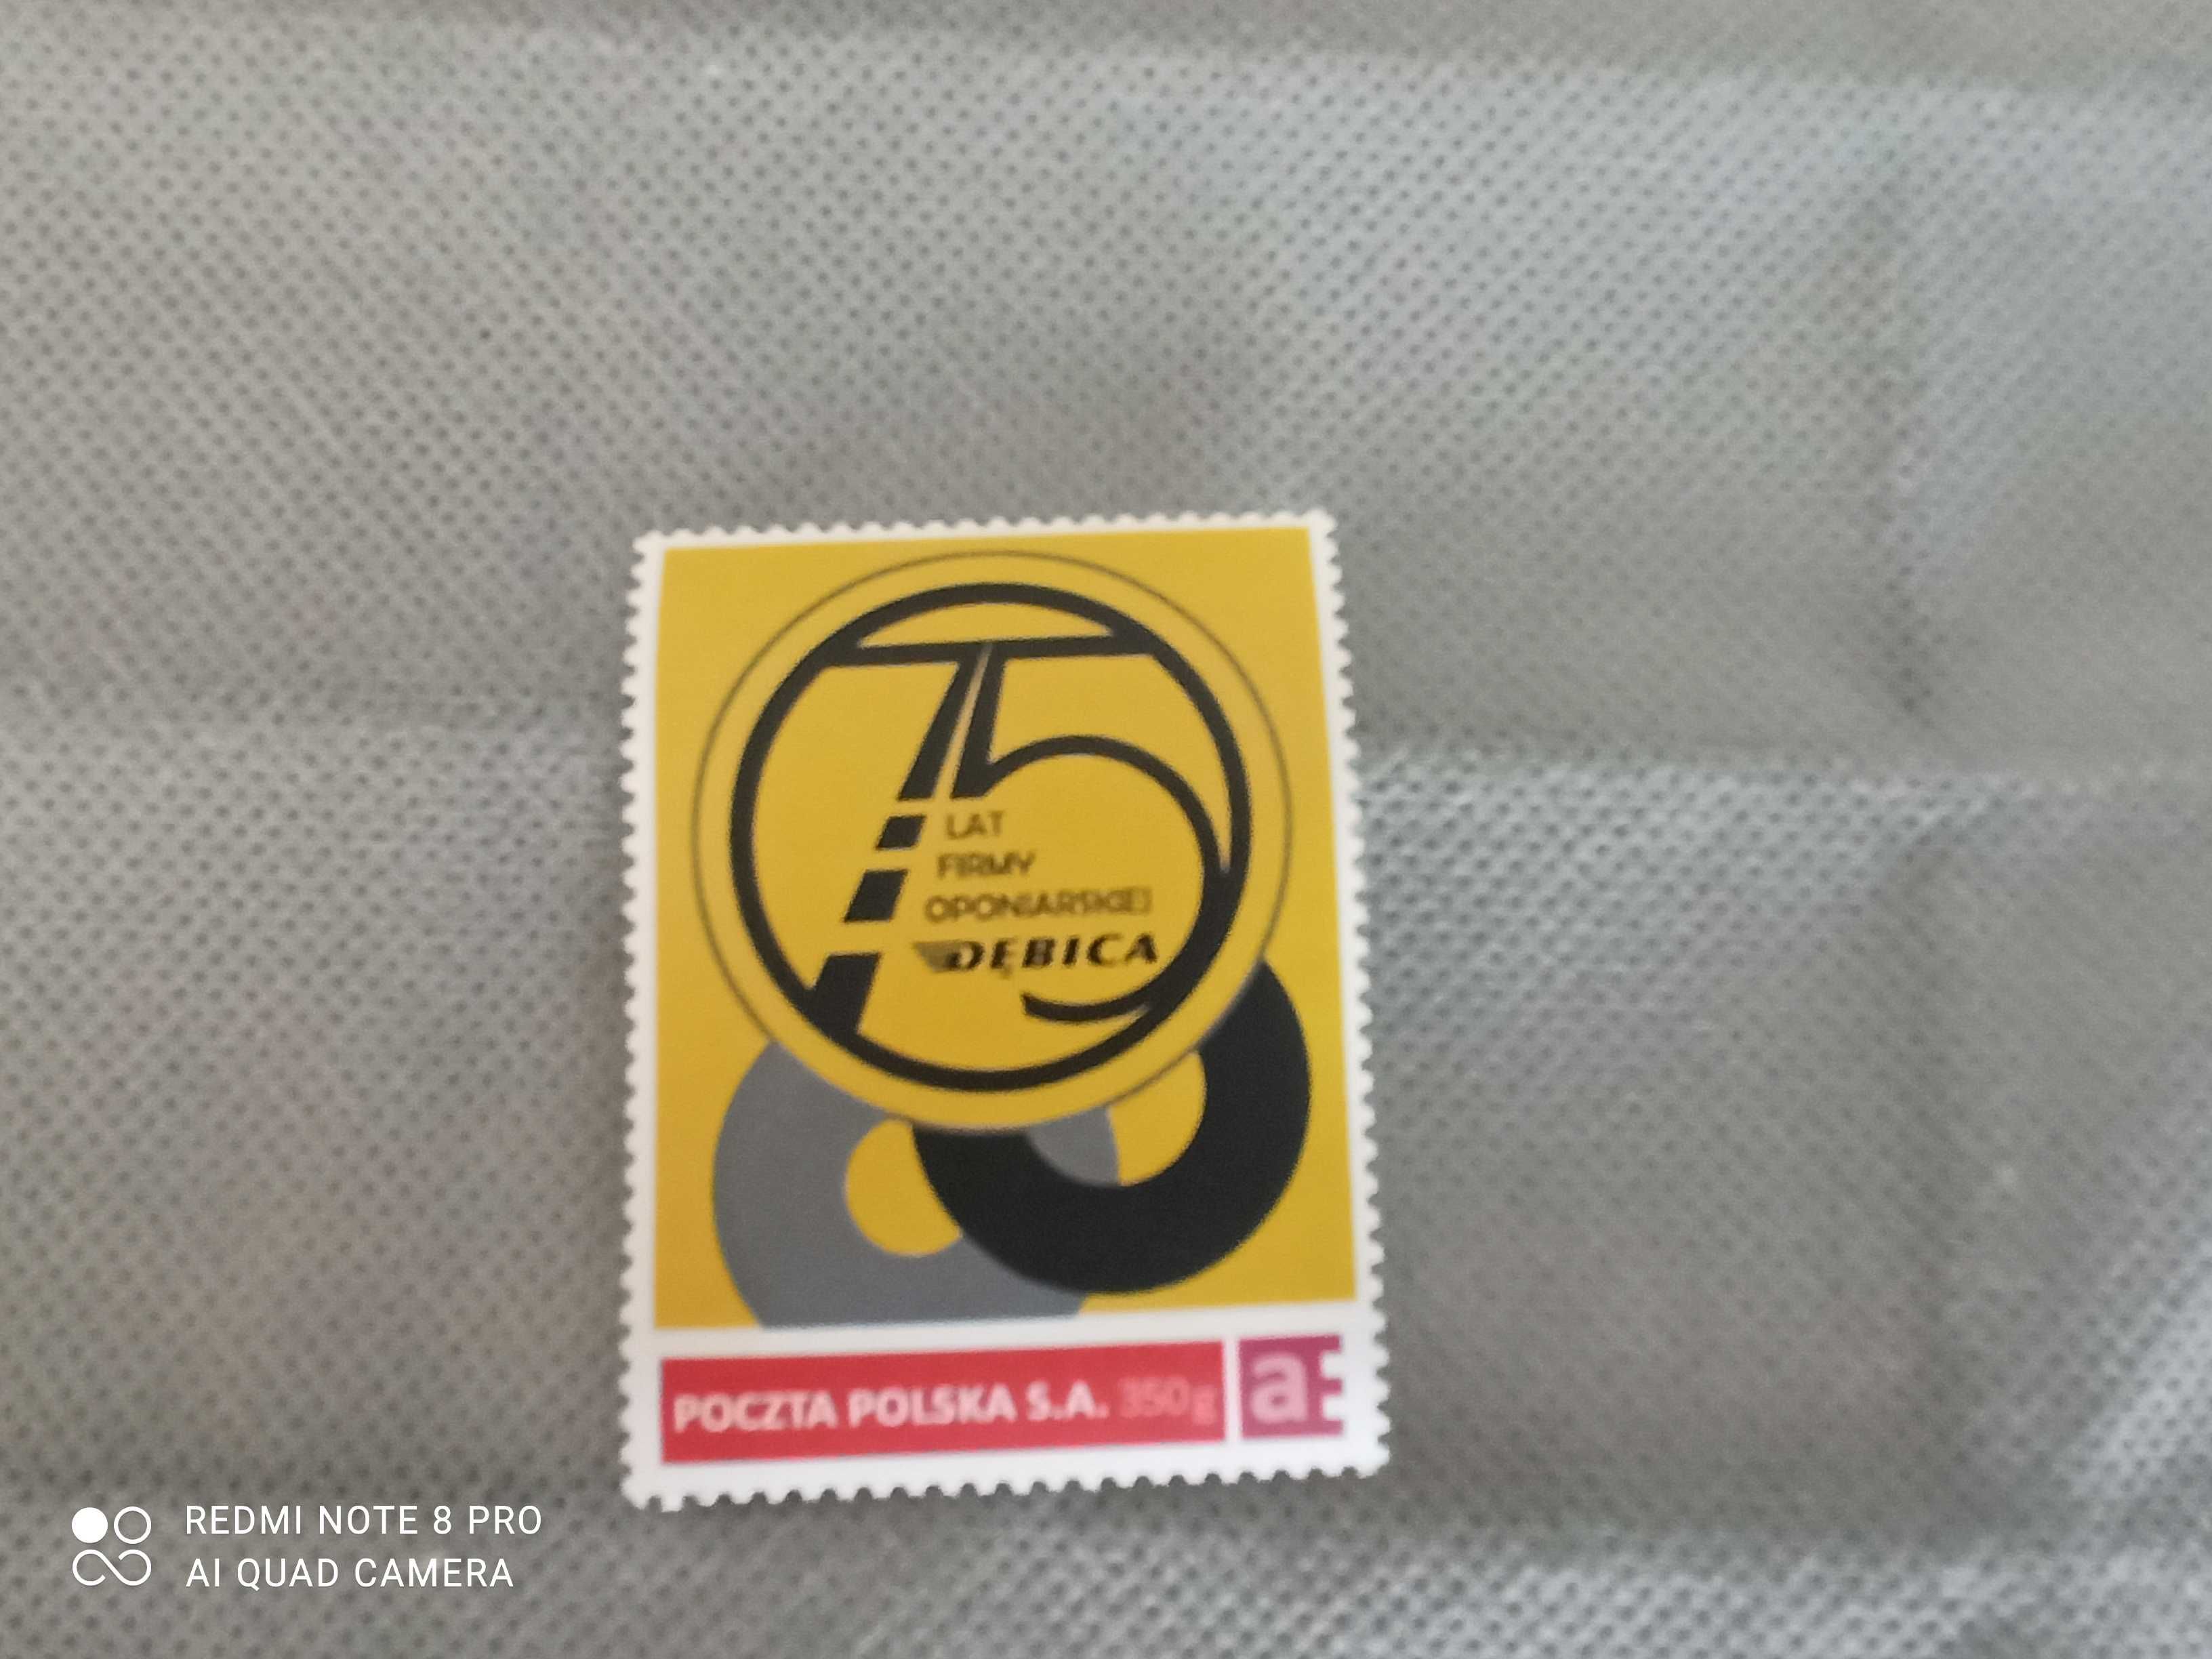 znaczek pocztowy na 75 lat firmy oponiarskiej Dębica w etui